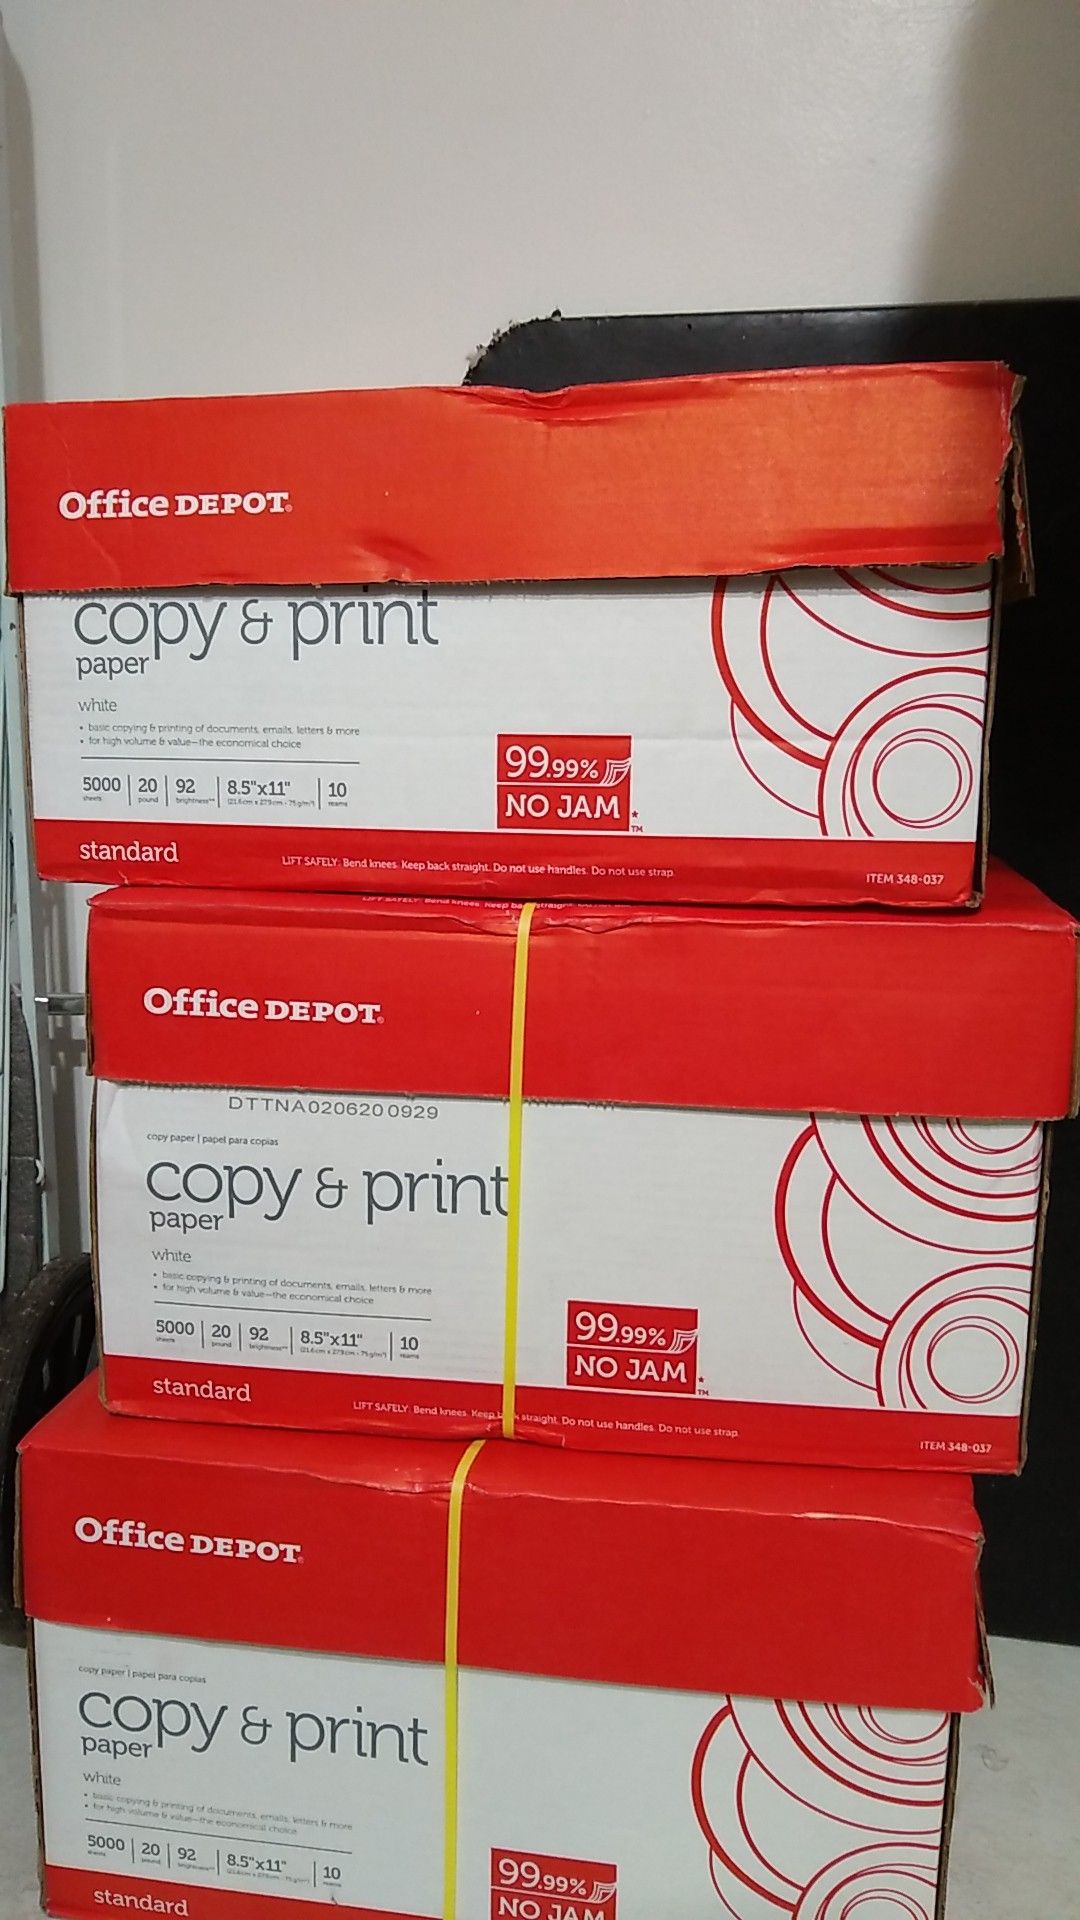 Copy & Print paper